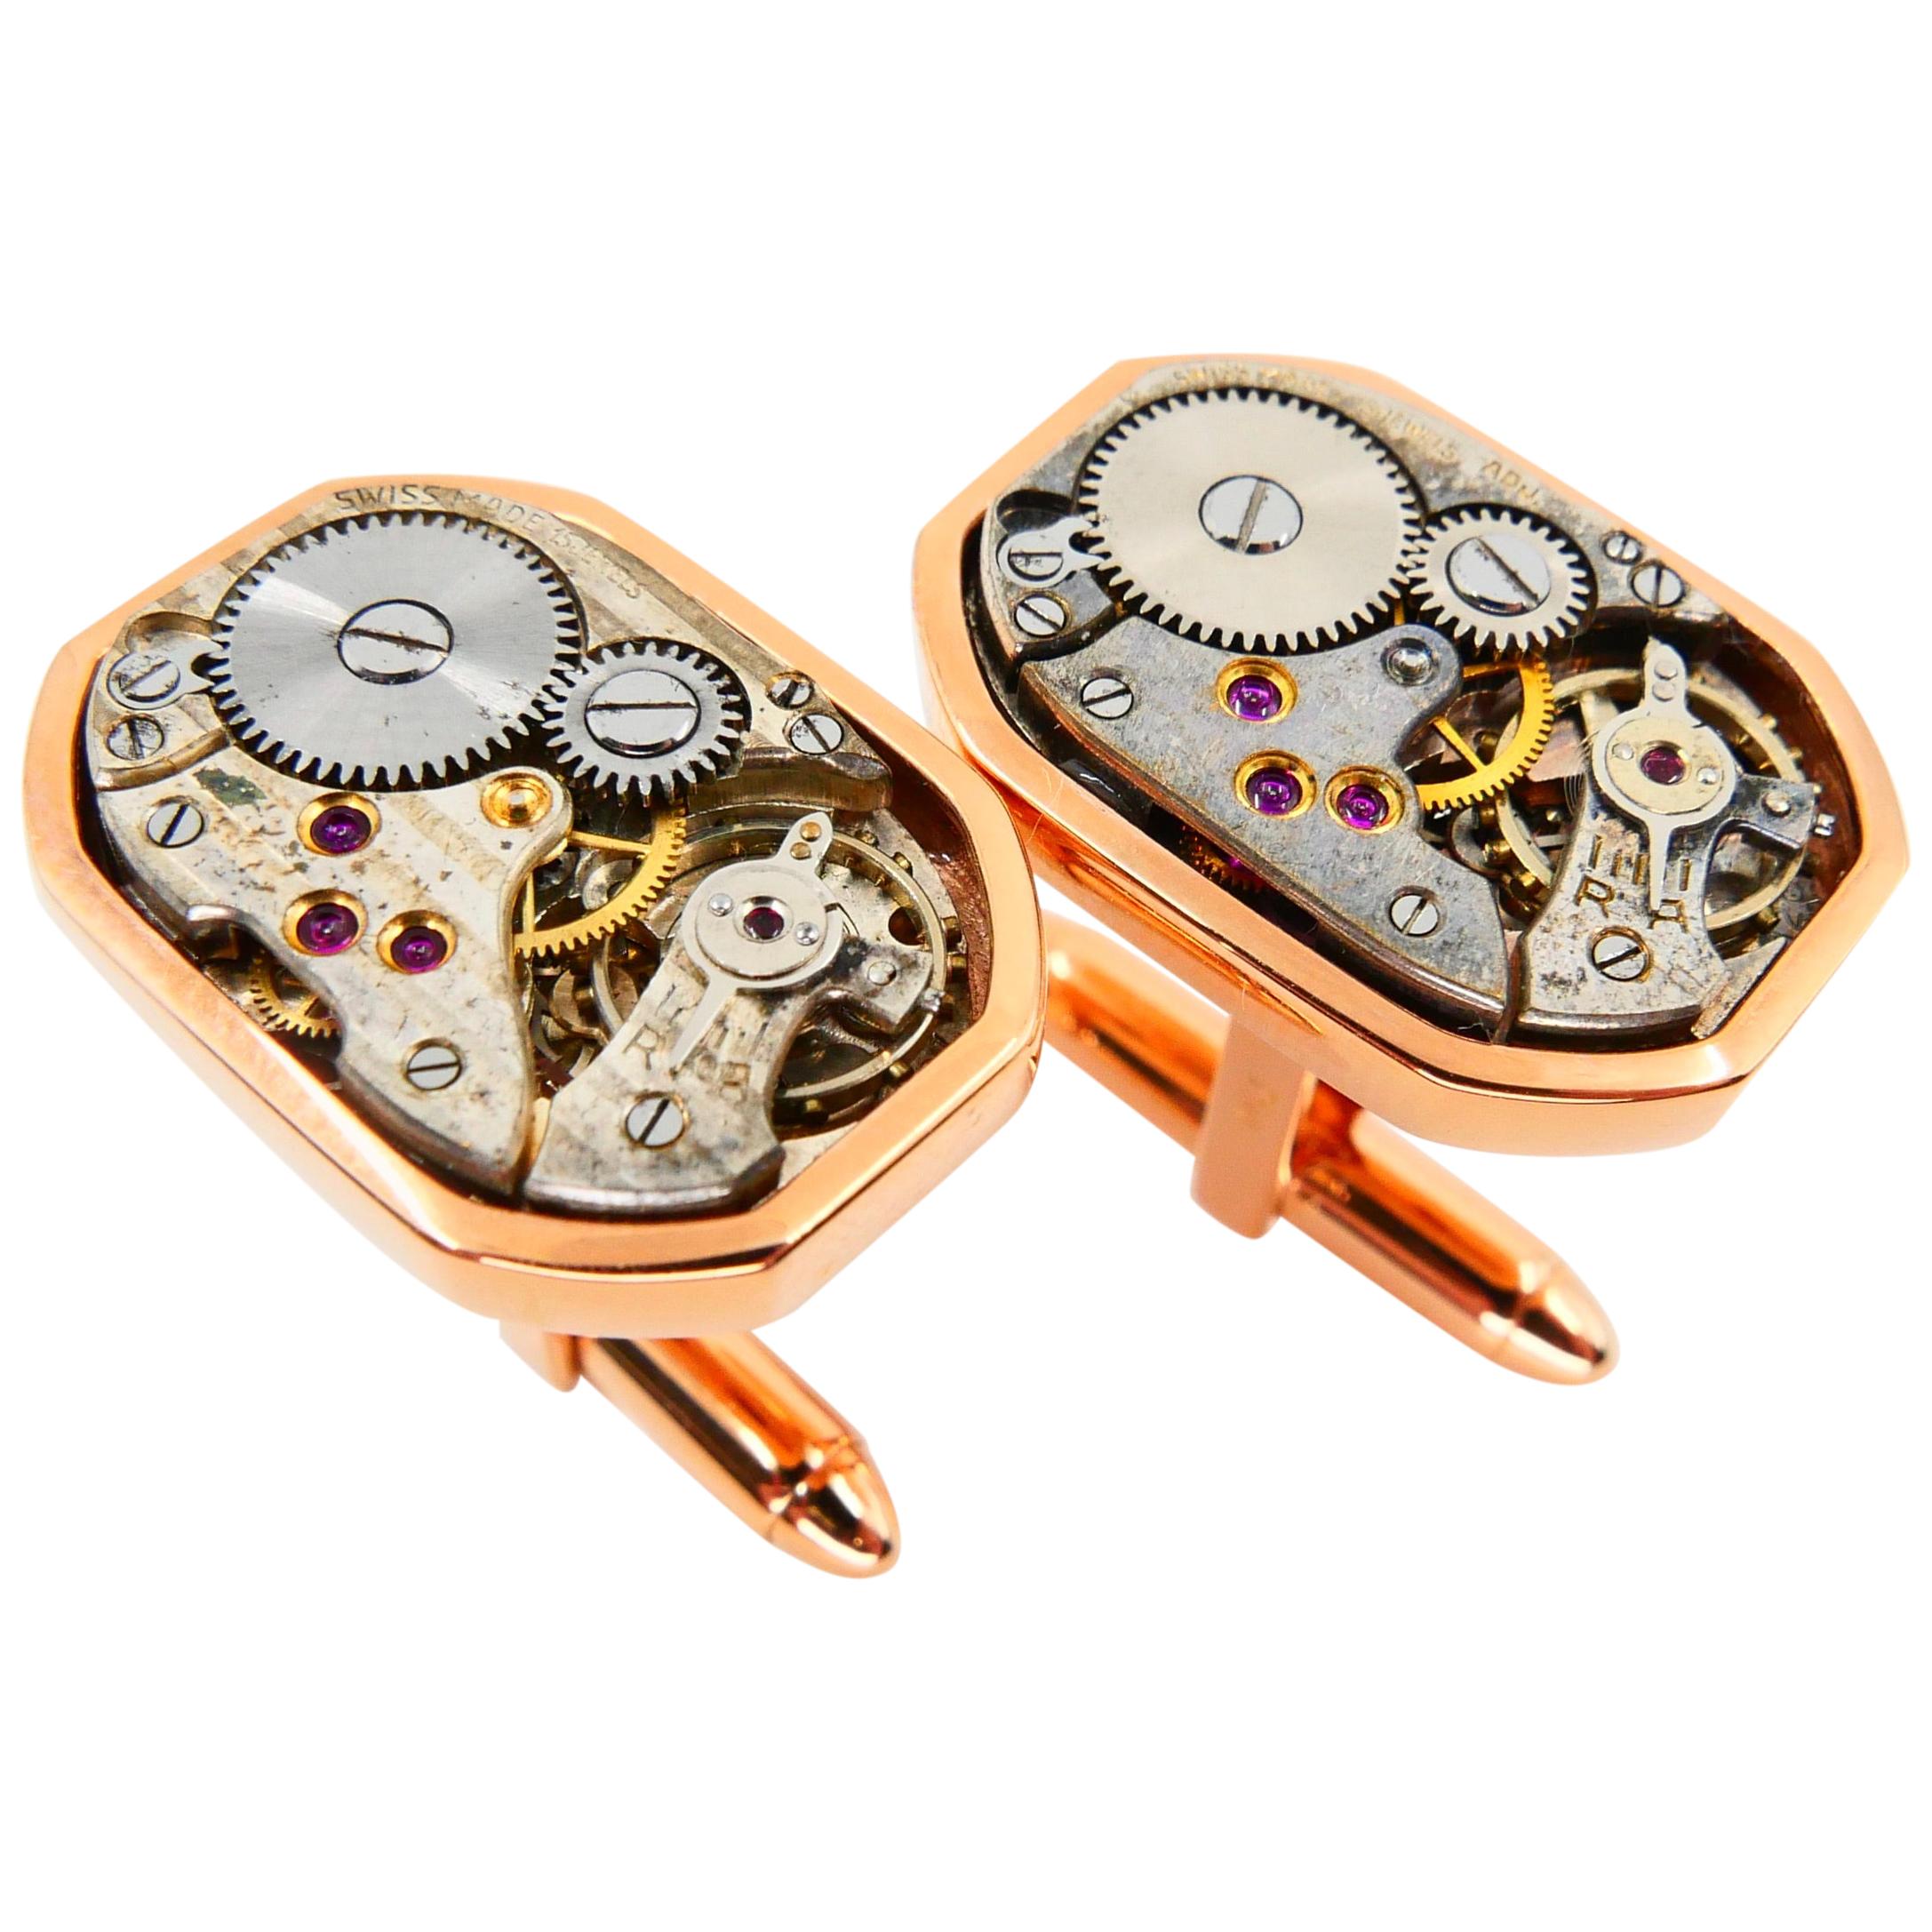 Men's Solid 18 Karat Gold Octagonal Cufflinks with Mechanical Watch Movements